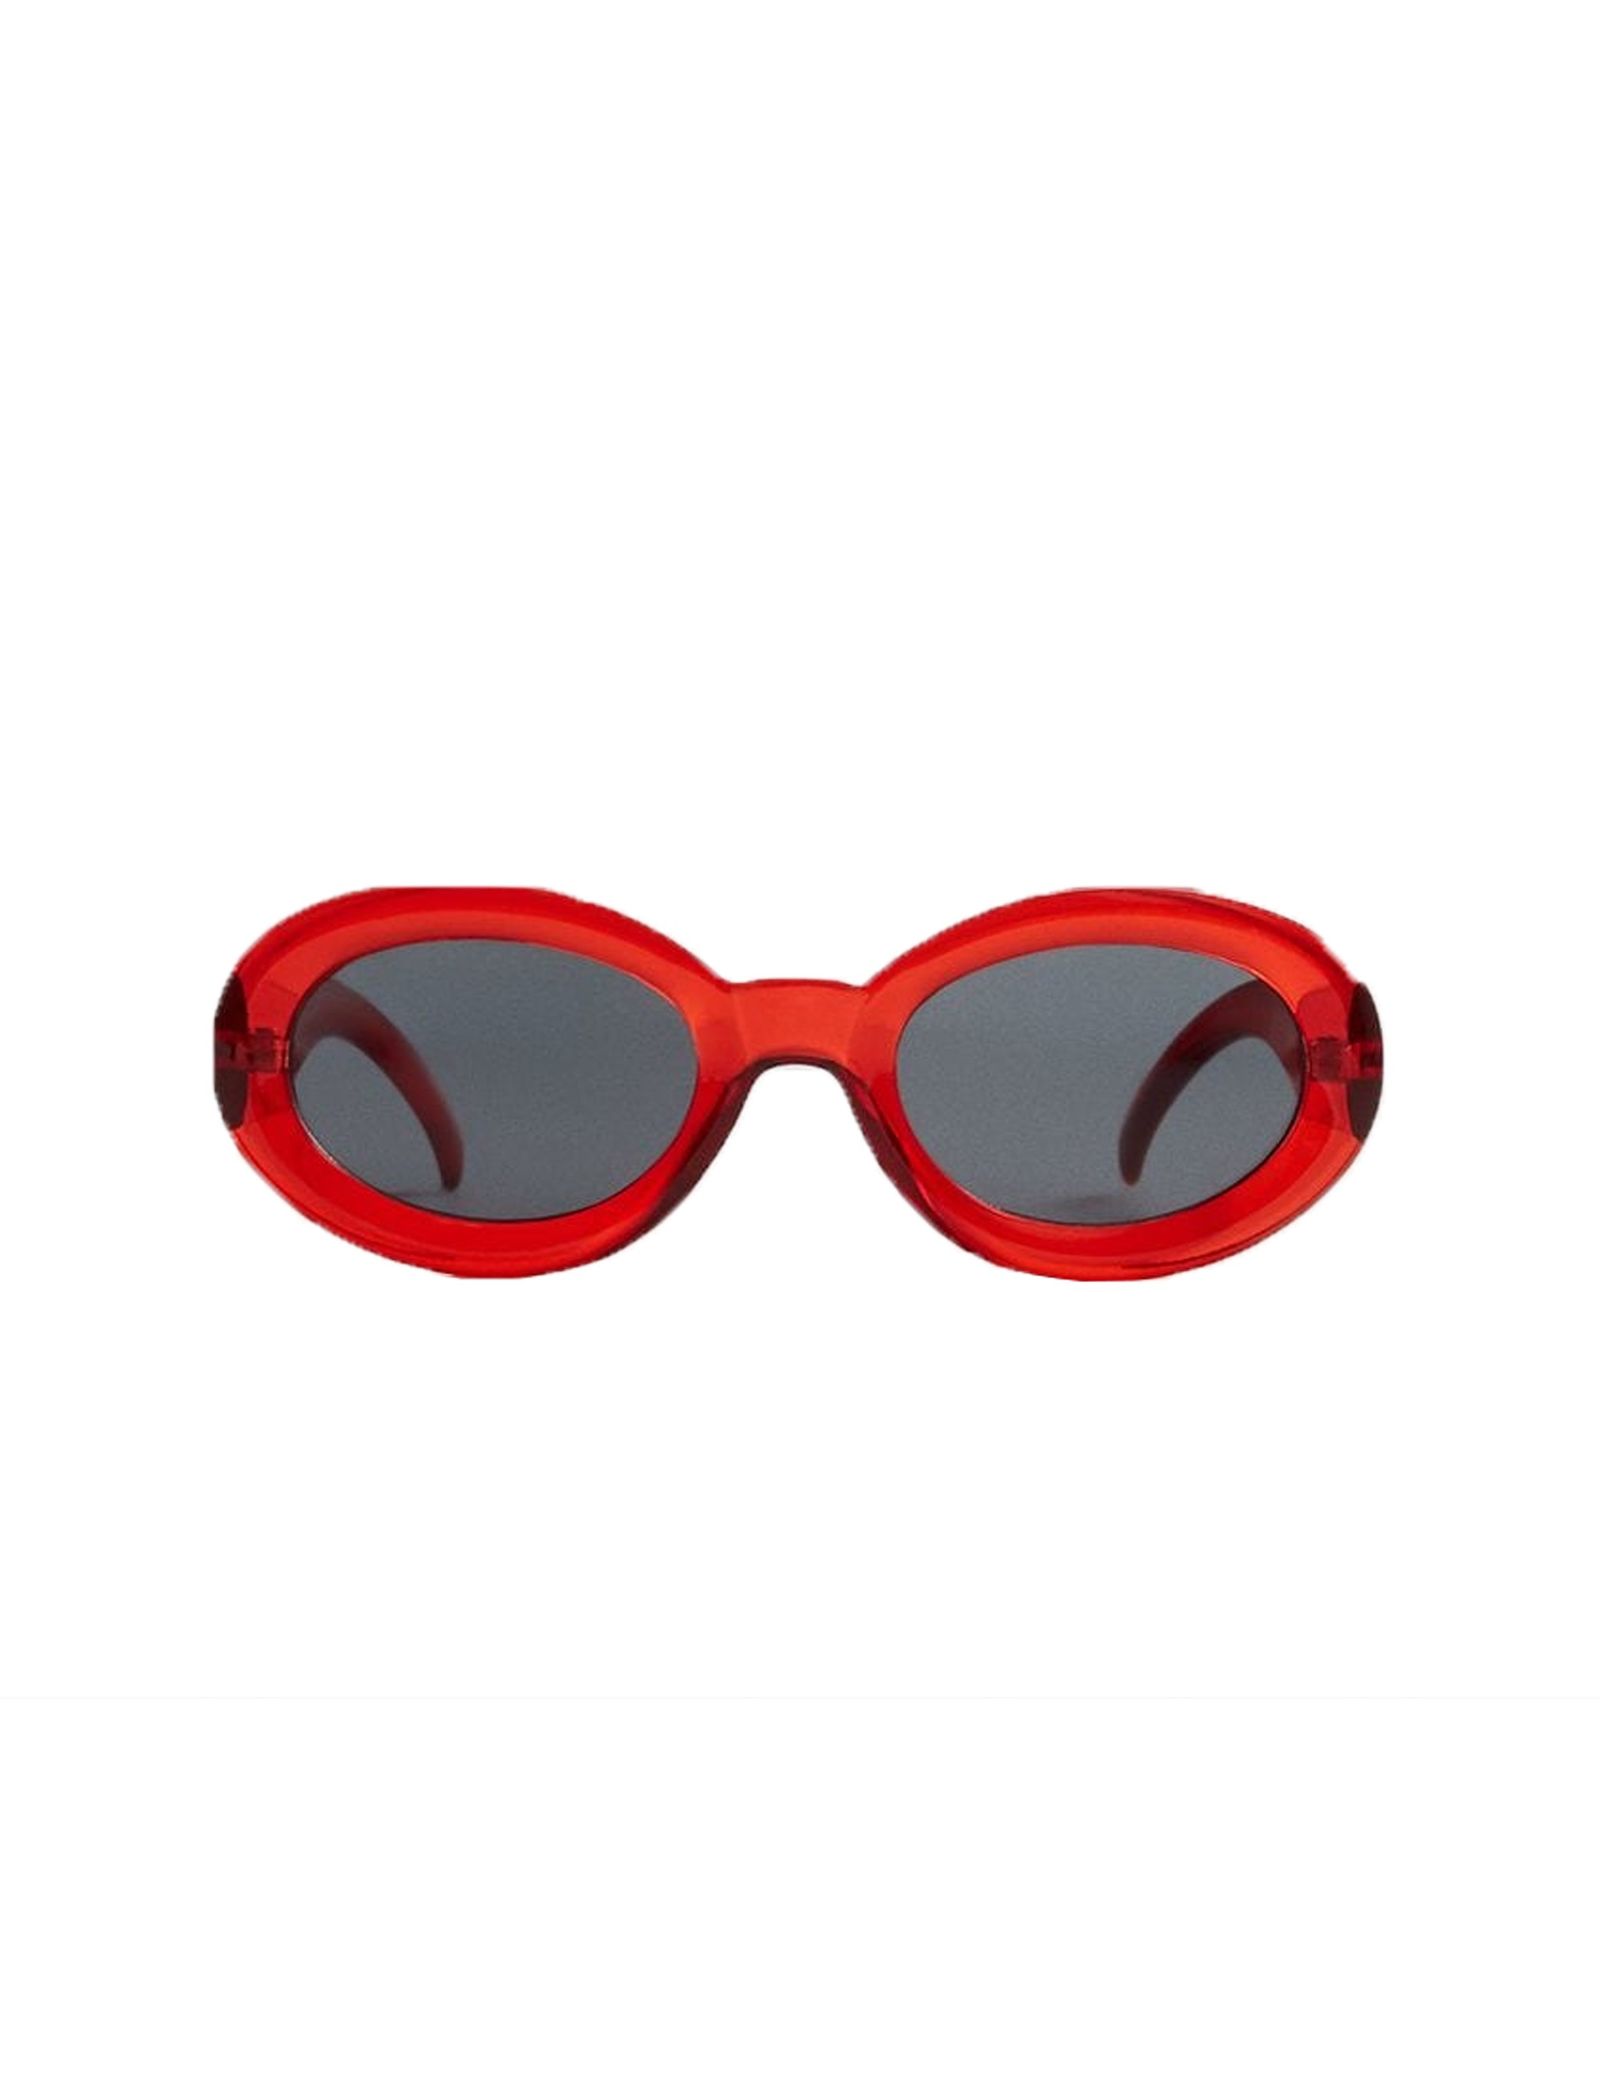 عینک آفتابی بیضی زنانه - مانگو - قرمز - 1